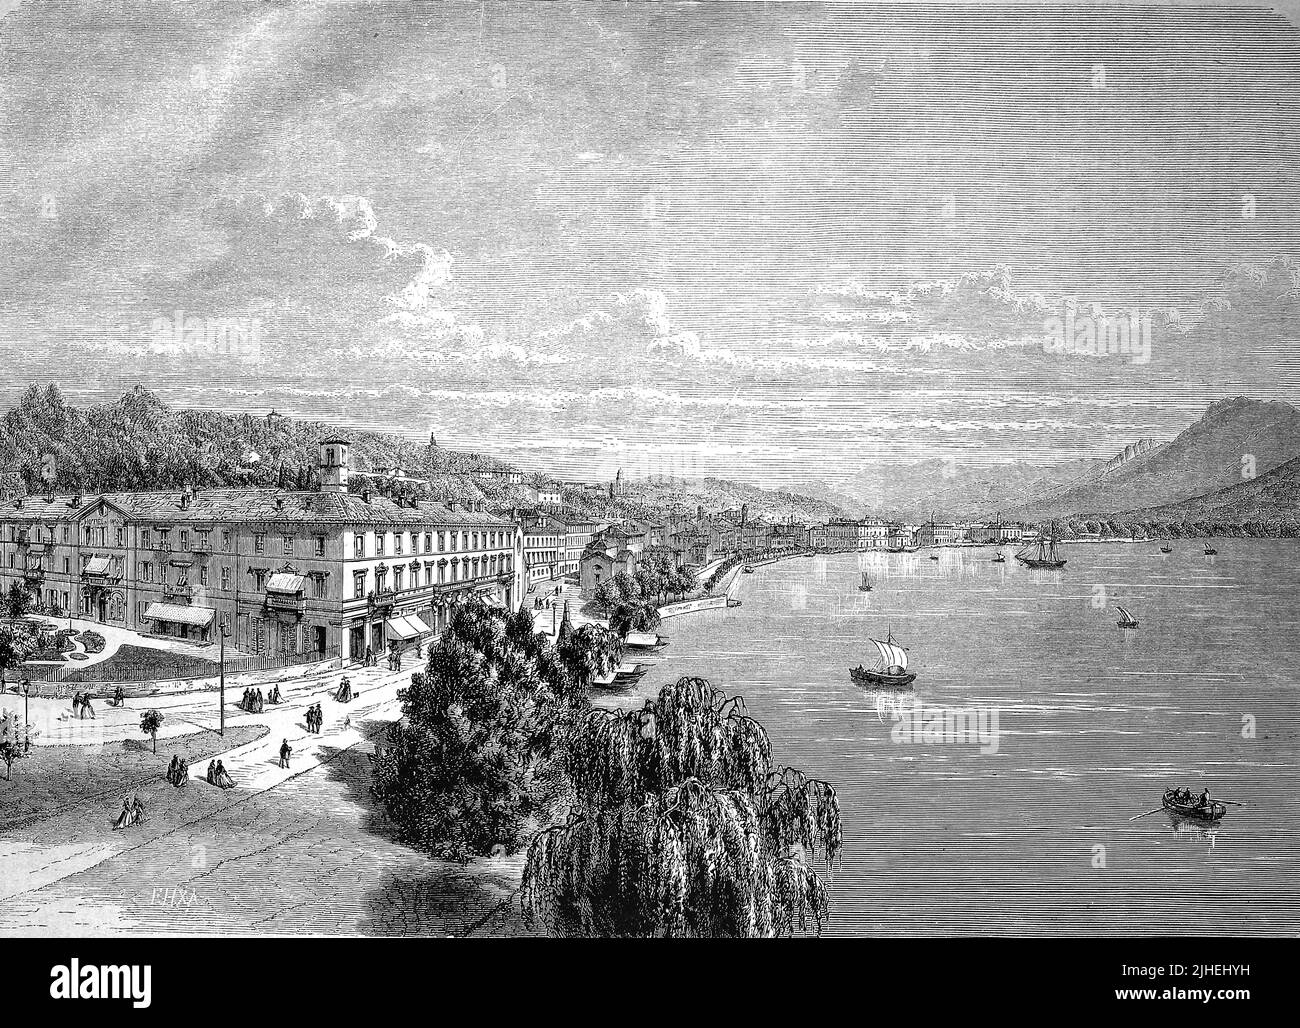 Ansicht von Lugano im Jahr 1881, Schweiz / Ansicht von Lugano 1881, Schweiz, Historisch, historisch, digital verbesserte Reproduktion eines Originals aus dem 19.. Jahrhundert, genaues Originaldatum nicht bekannt Stockfoto